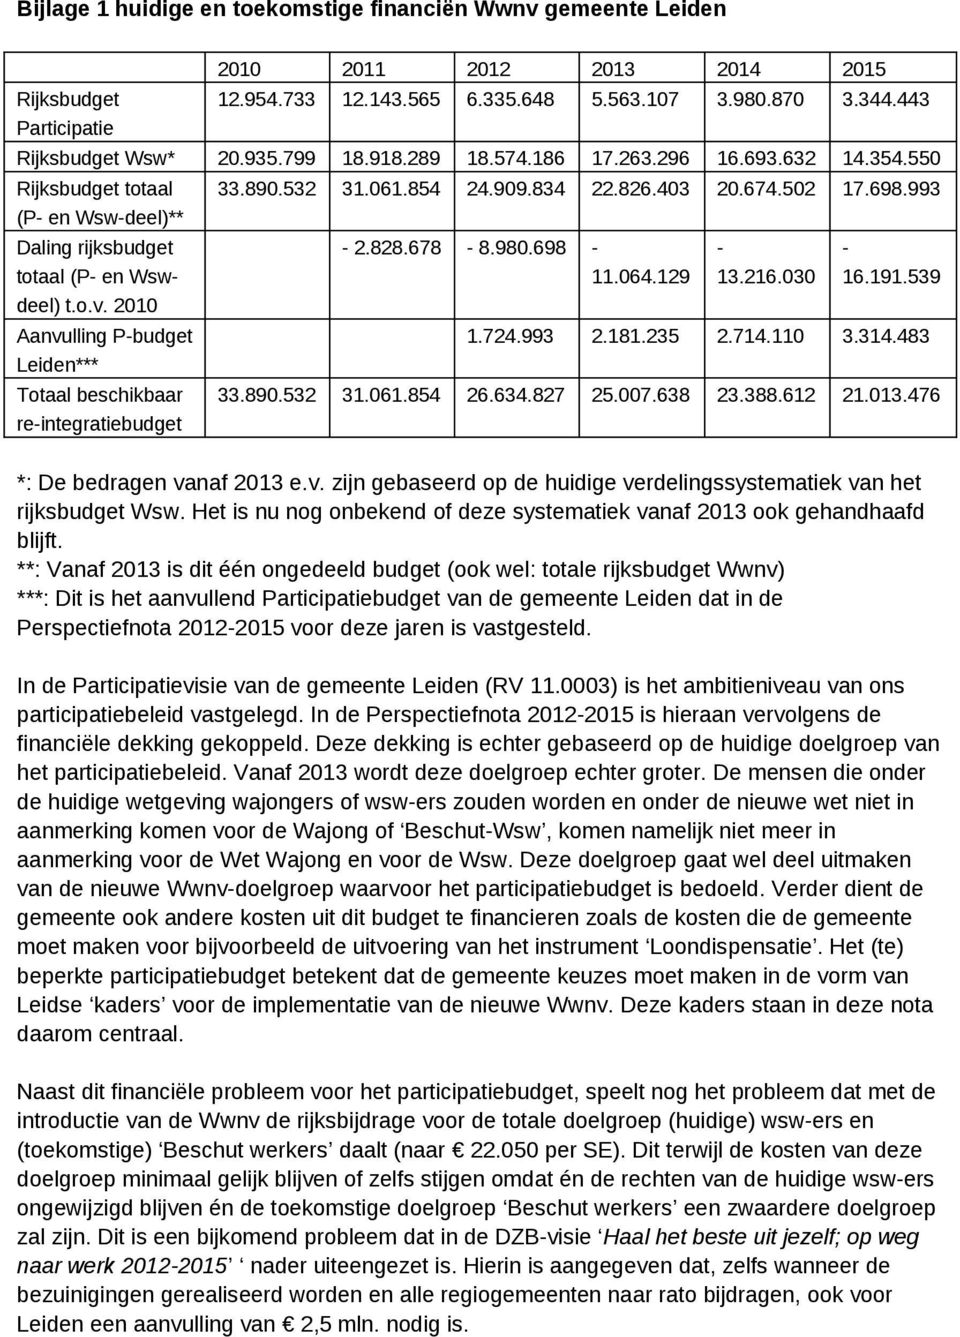 2010 Aanvulling P-budget Leiden*** Totaal beschikbaar re-integratiebudget 33.890.532 31.061.854 24.909.834 22.826.403 20.674.502 17.698.993-2.828.678-8.980.698-11.064.129-13.216.030-16.191.539 1.724.